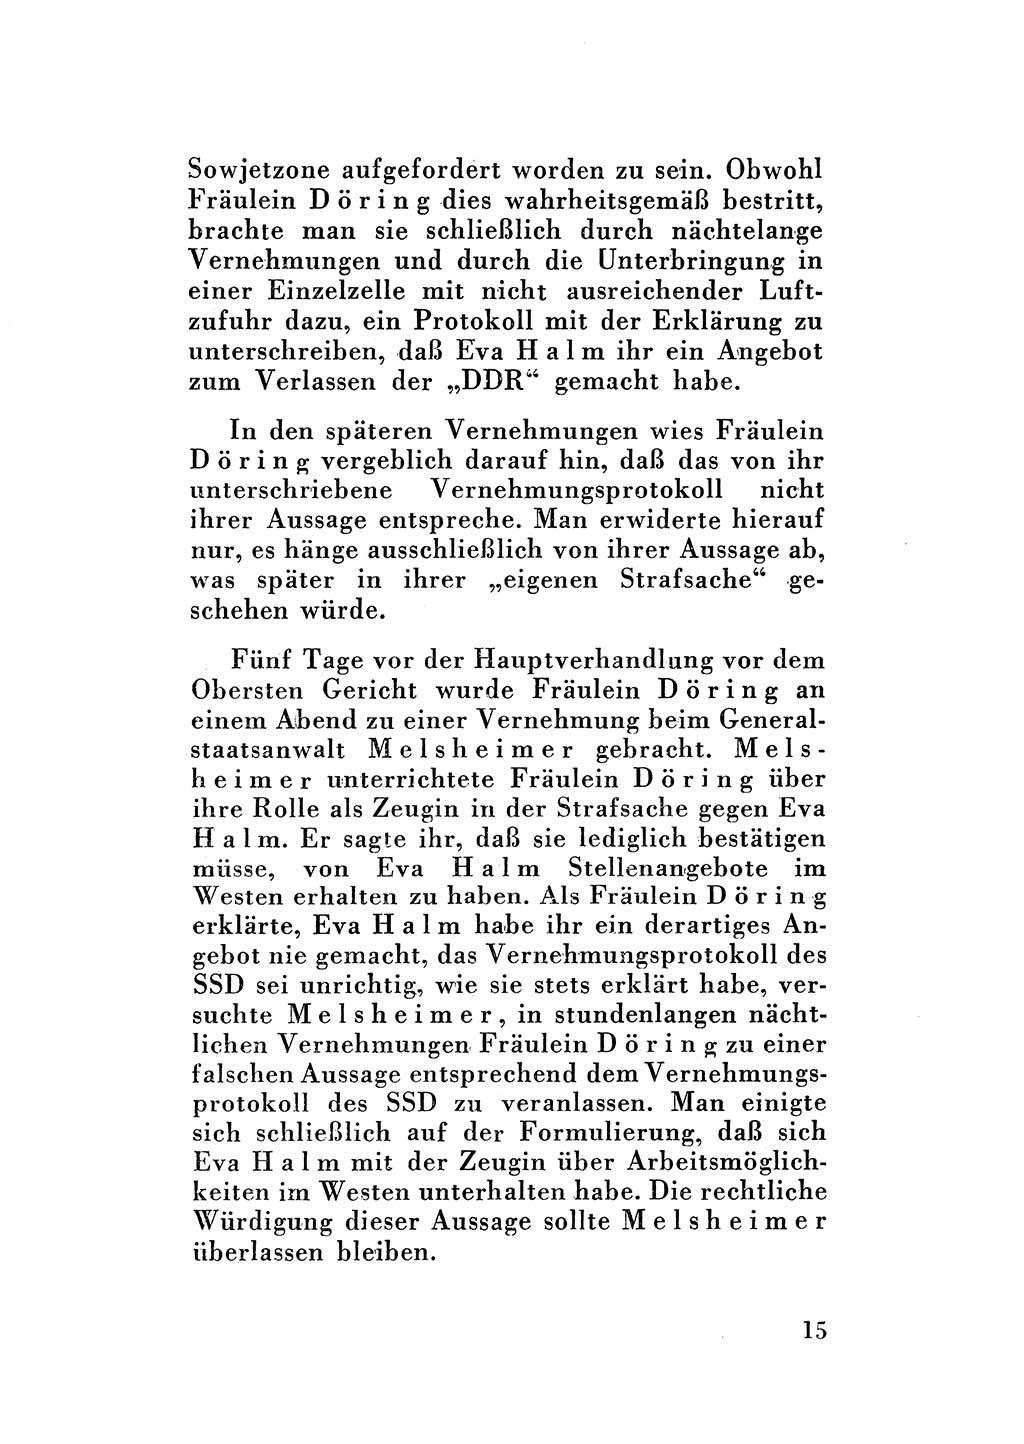 Katalog des Unrechts, Untersuchungsausschuß Freiheitlicher Juristen (UfJ) [Bundesrepublik Deutschland (BRD)] 1956, Seite 15 (Kat. UnR. UfJ BRD 1956, S. 15)